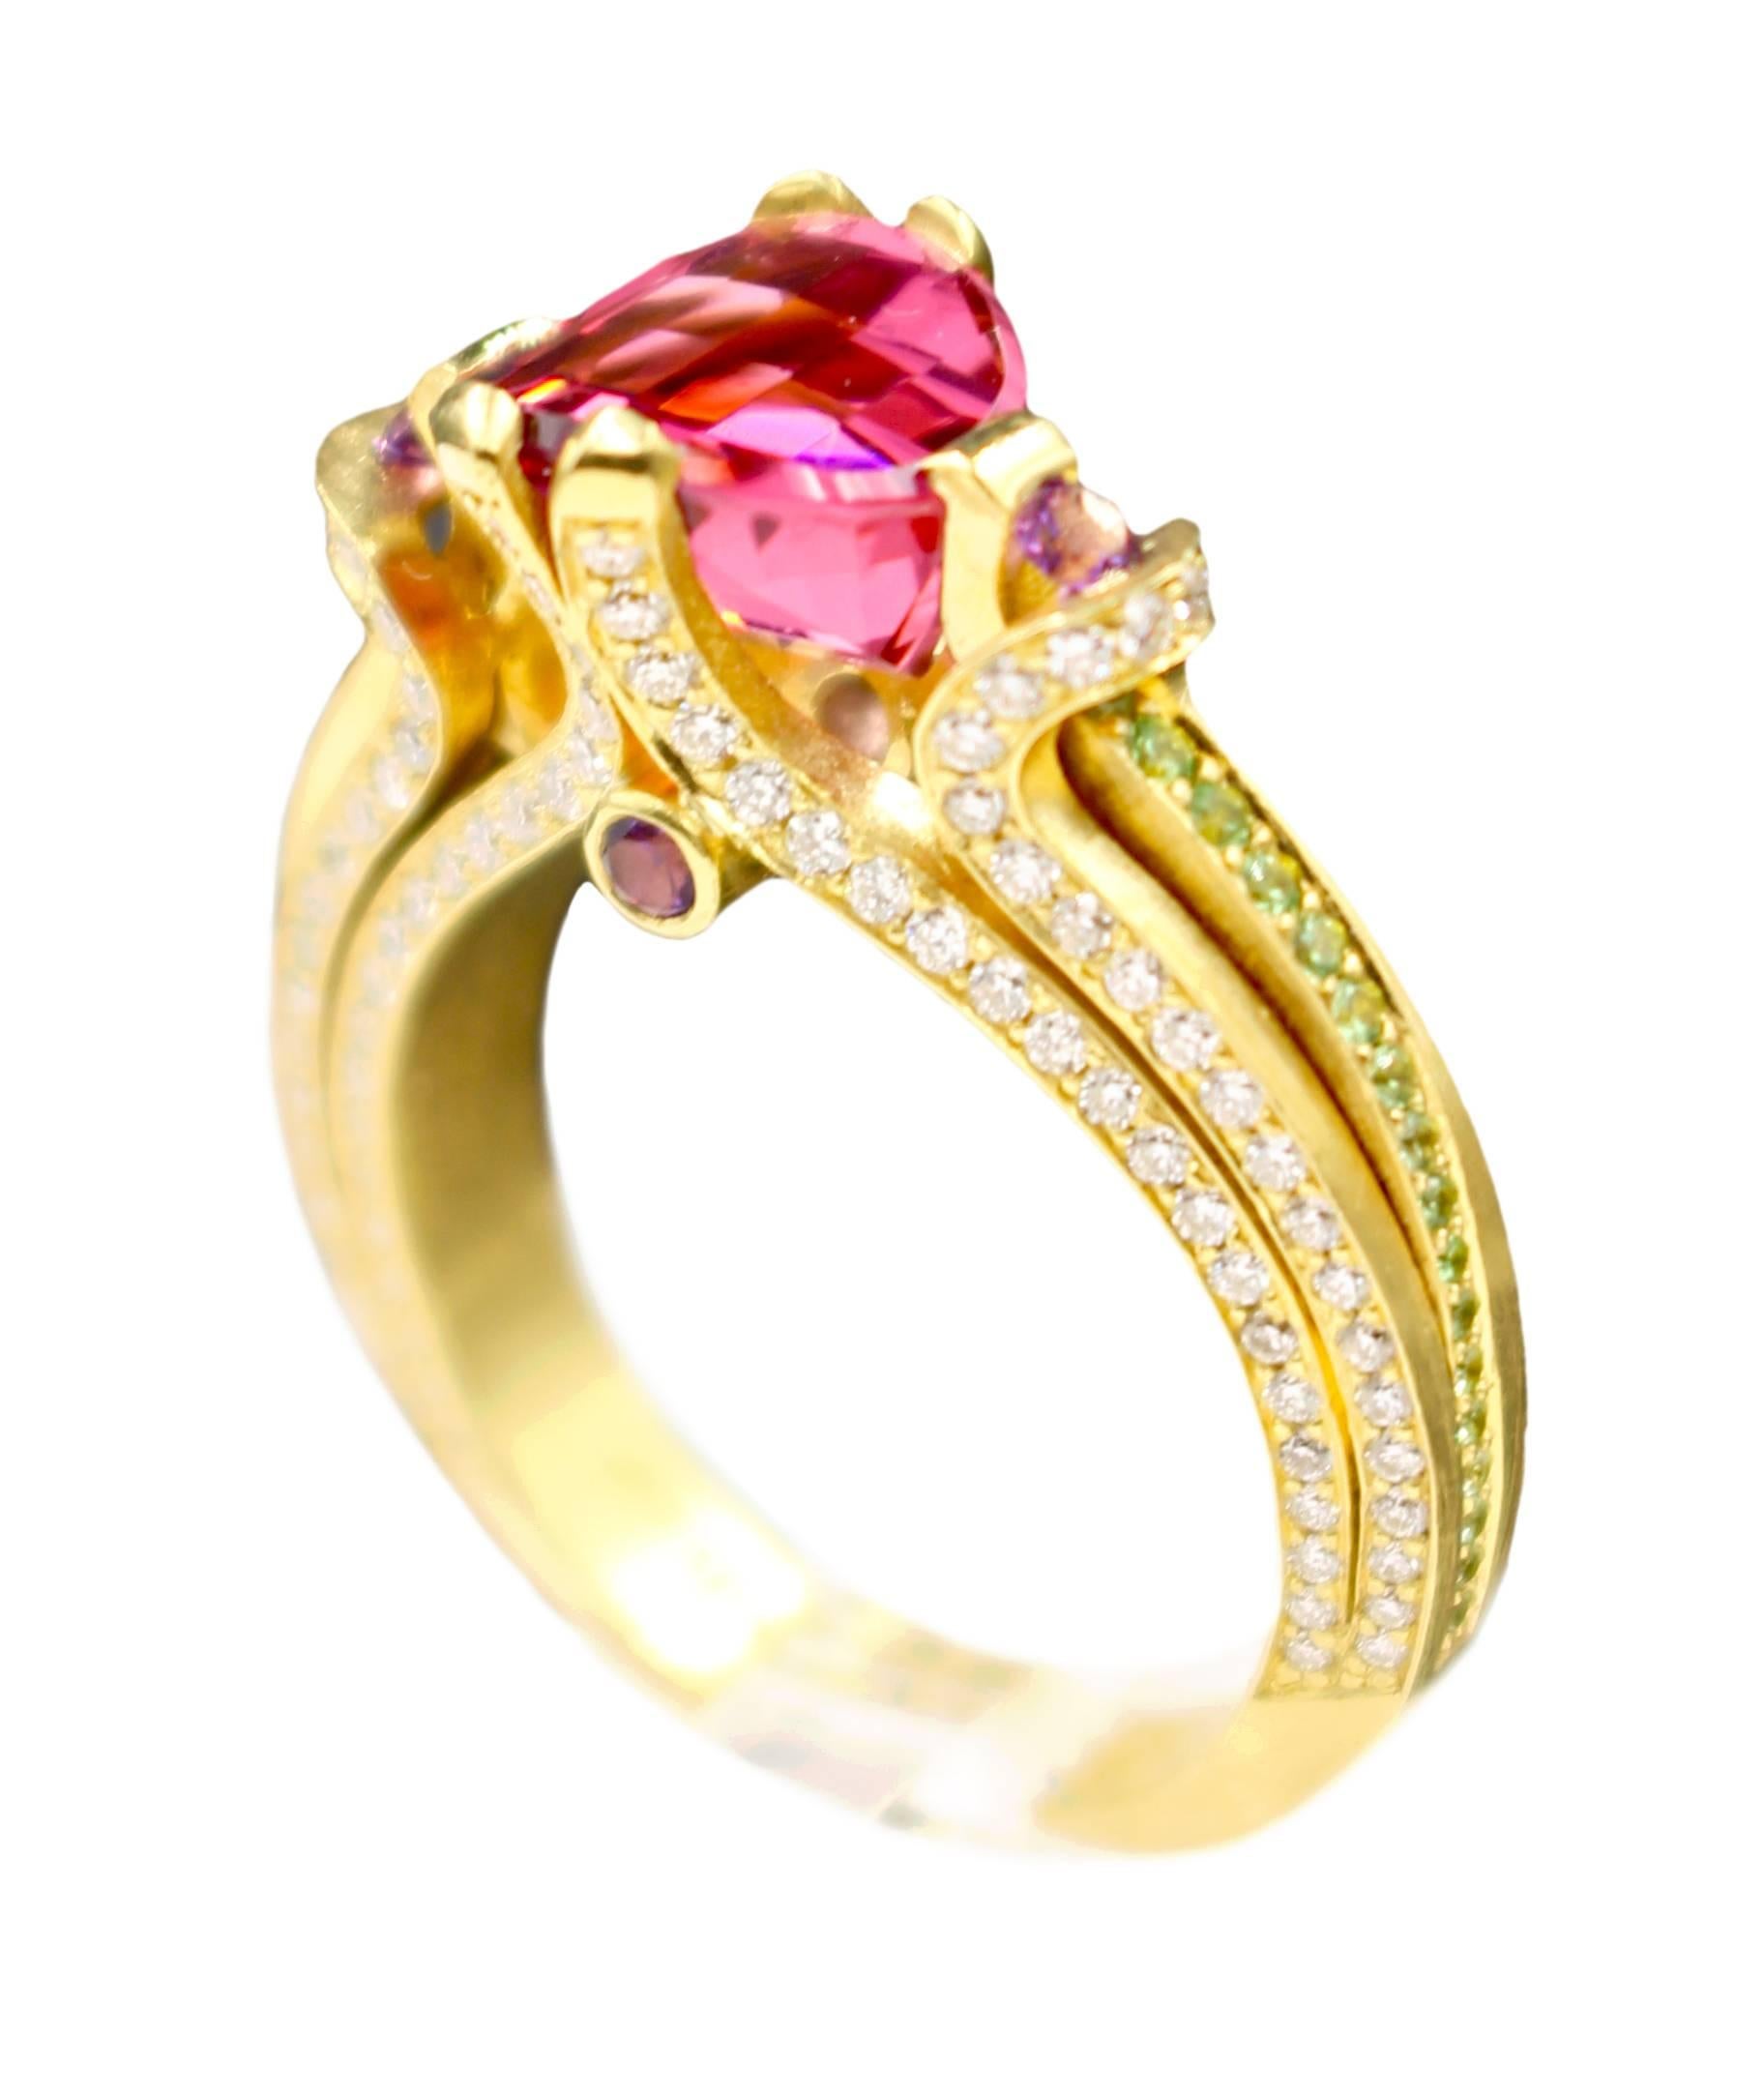 Ryan Roberts, Rubellite Tourmaline Ring, 18 Karat Gold, Diamond For Sale 4